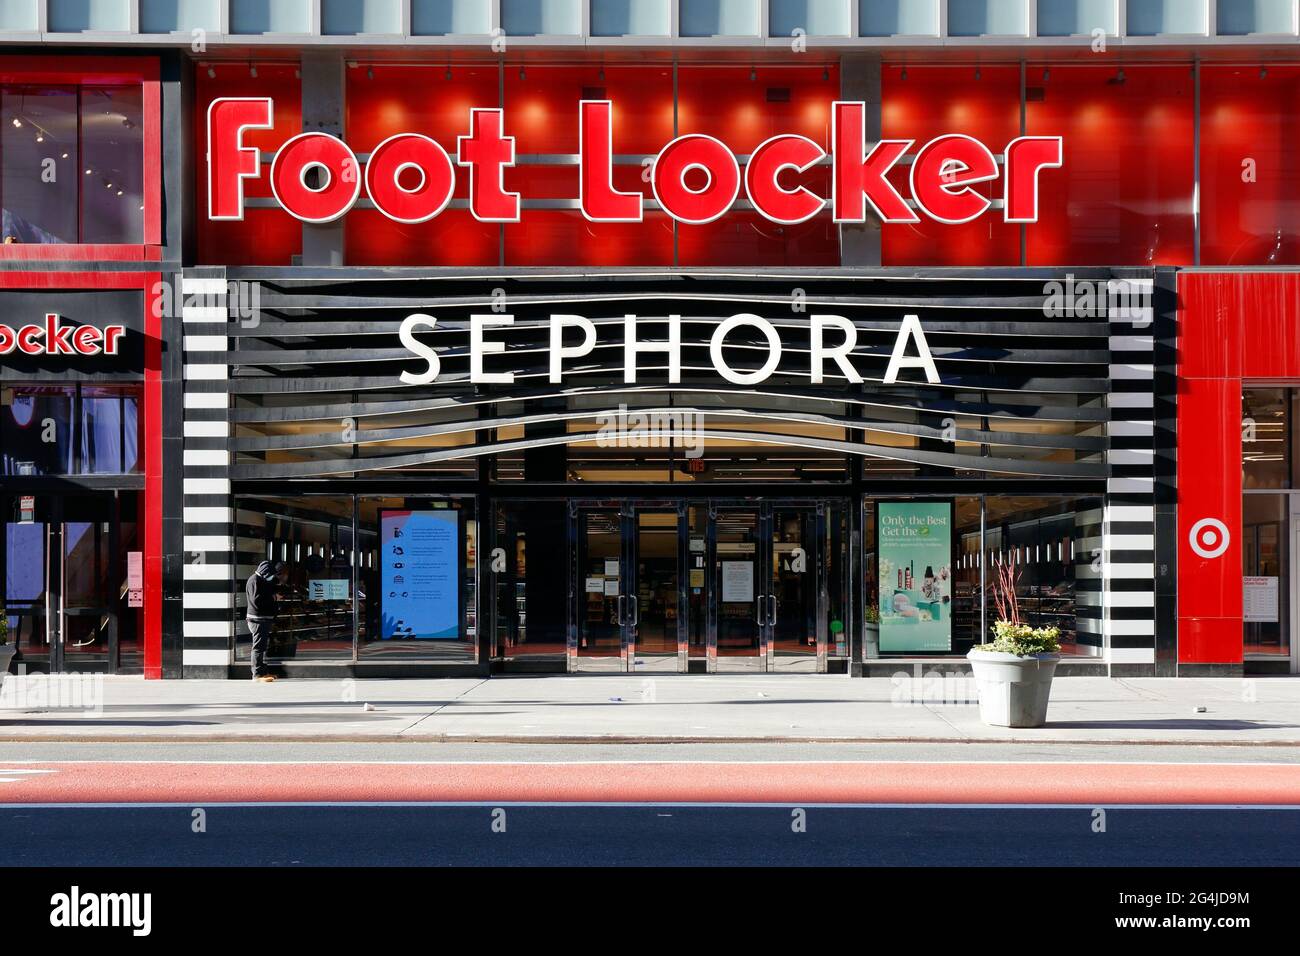 Foot locker, Sephora, Target, 112 W 34. St, New York, NYC Schaufensterfoto von kommerziellen Schaufenstern auf dem Herald Square. Stockfoto